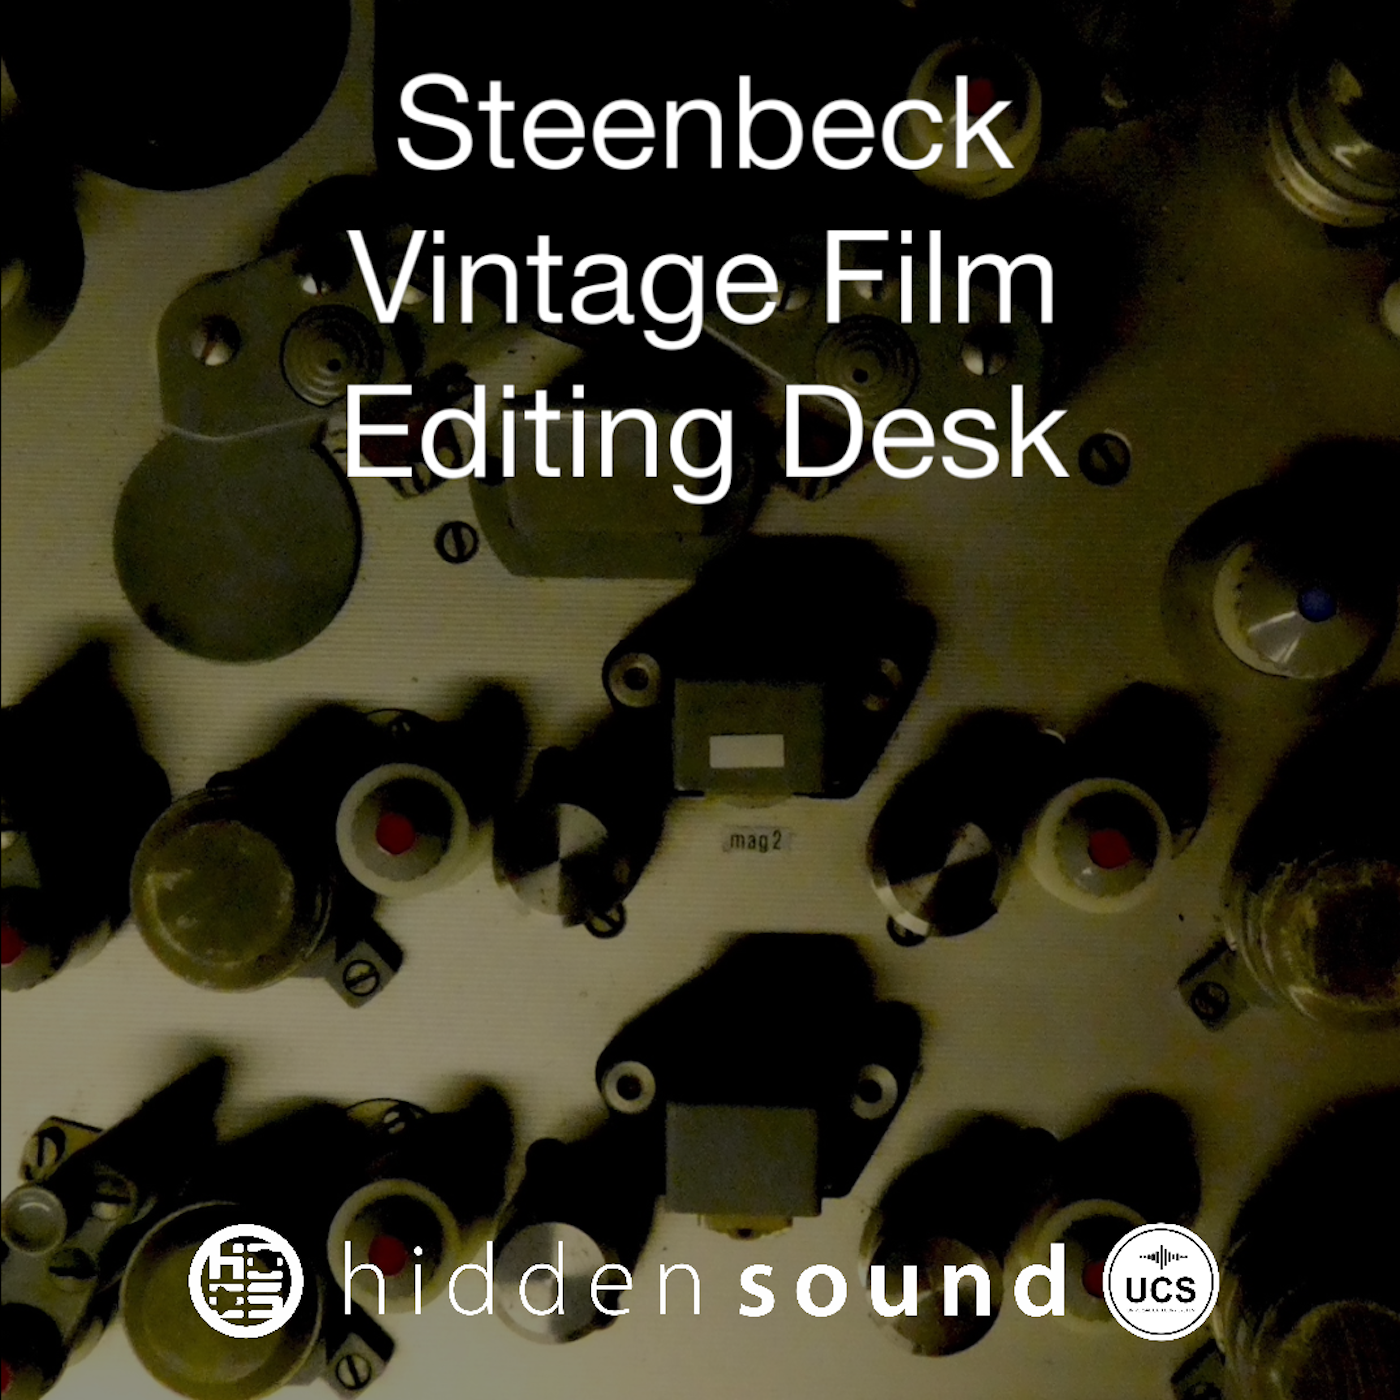 Steenbeck Vintage Film Editing Desk